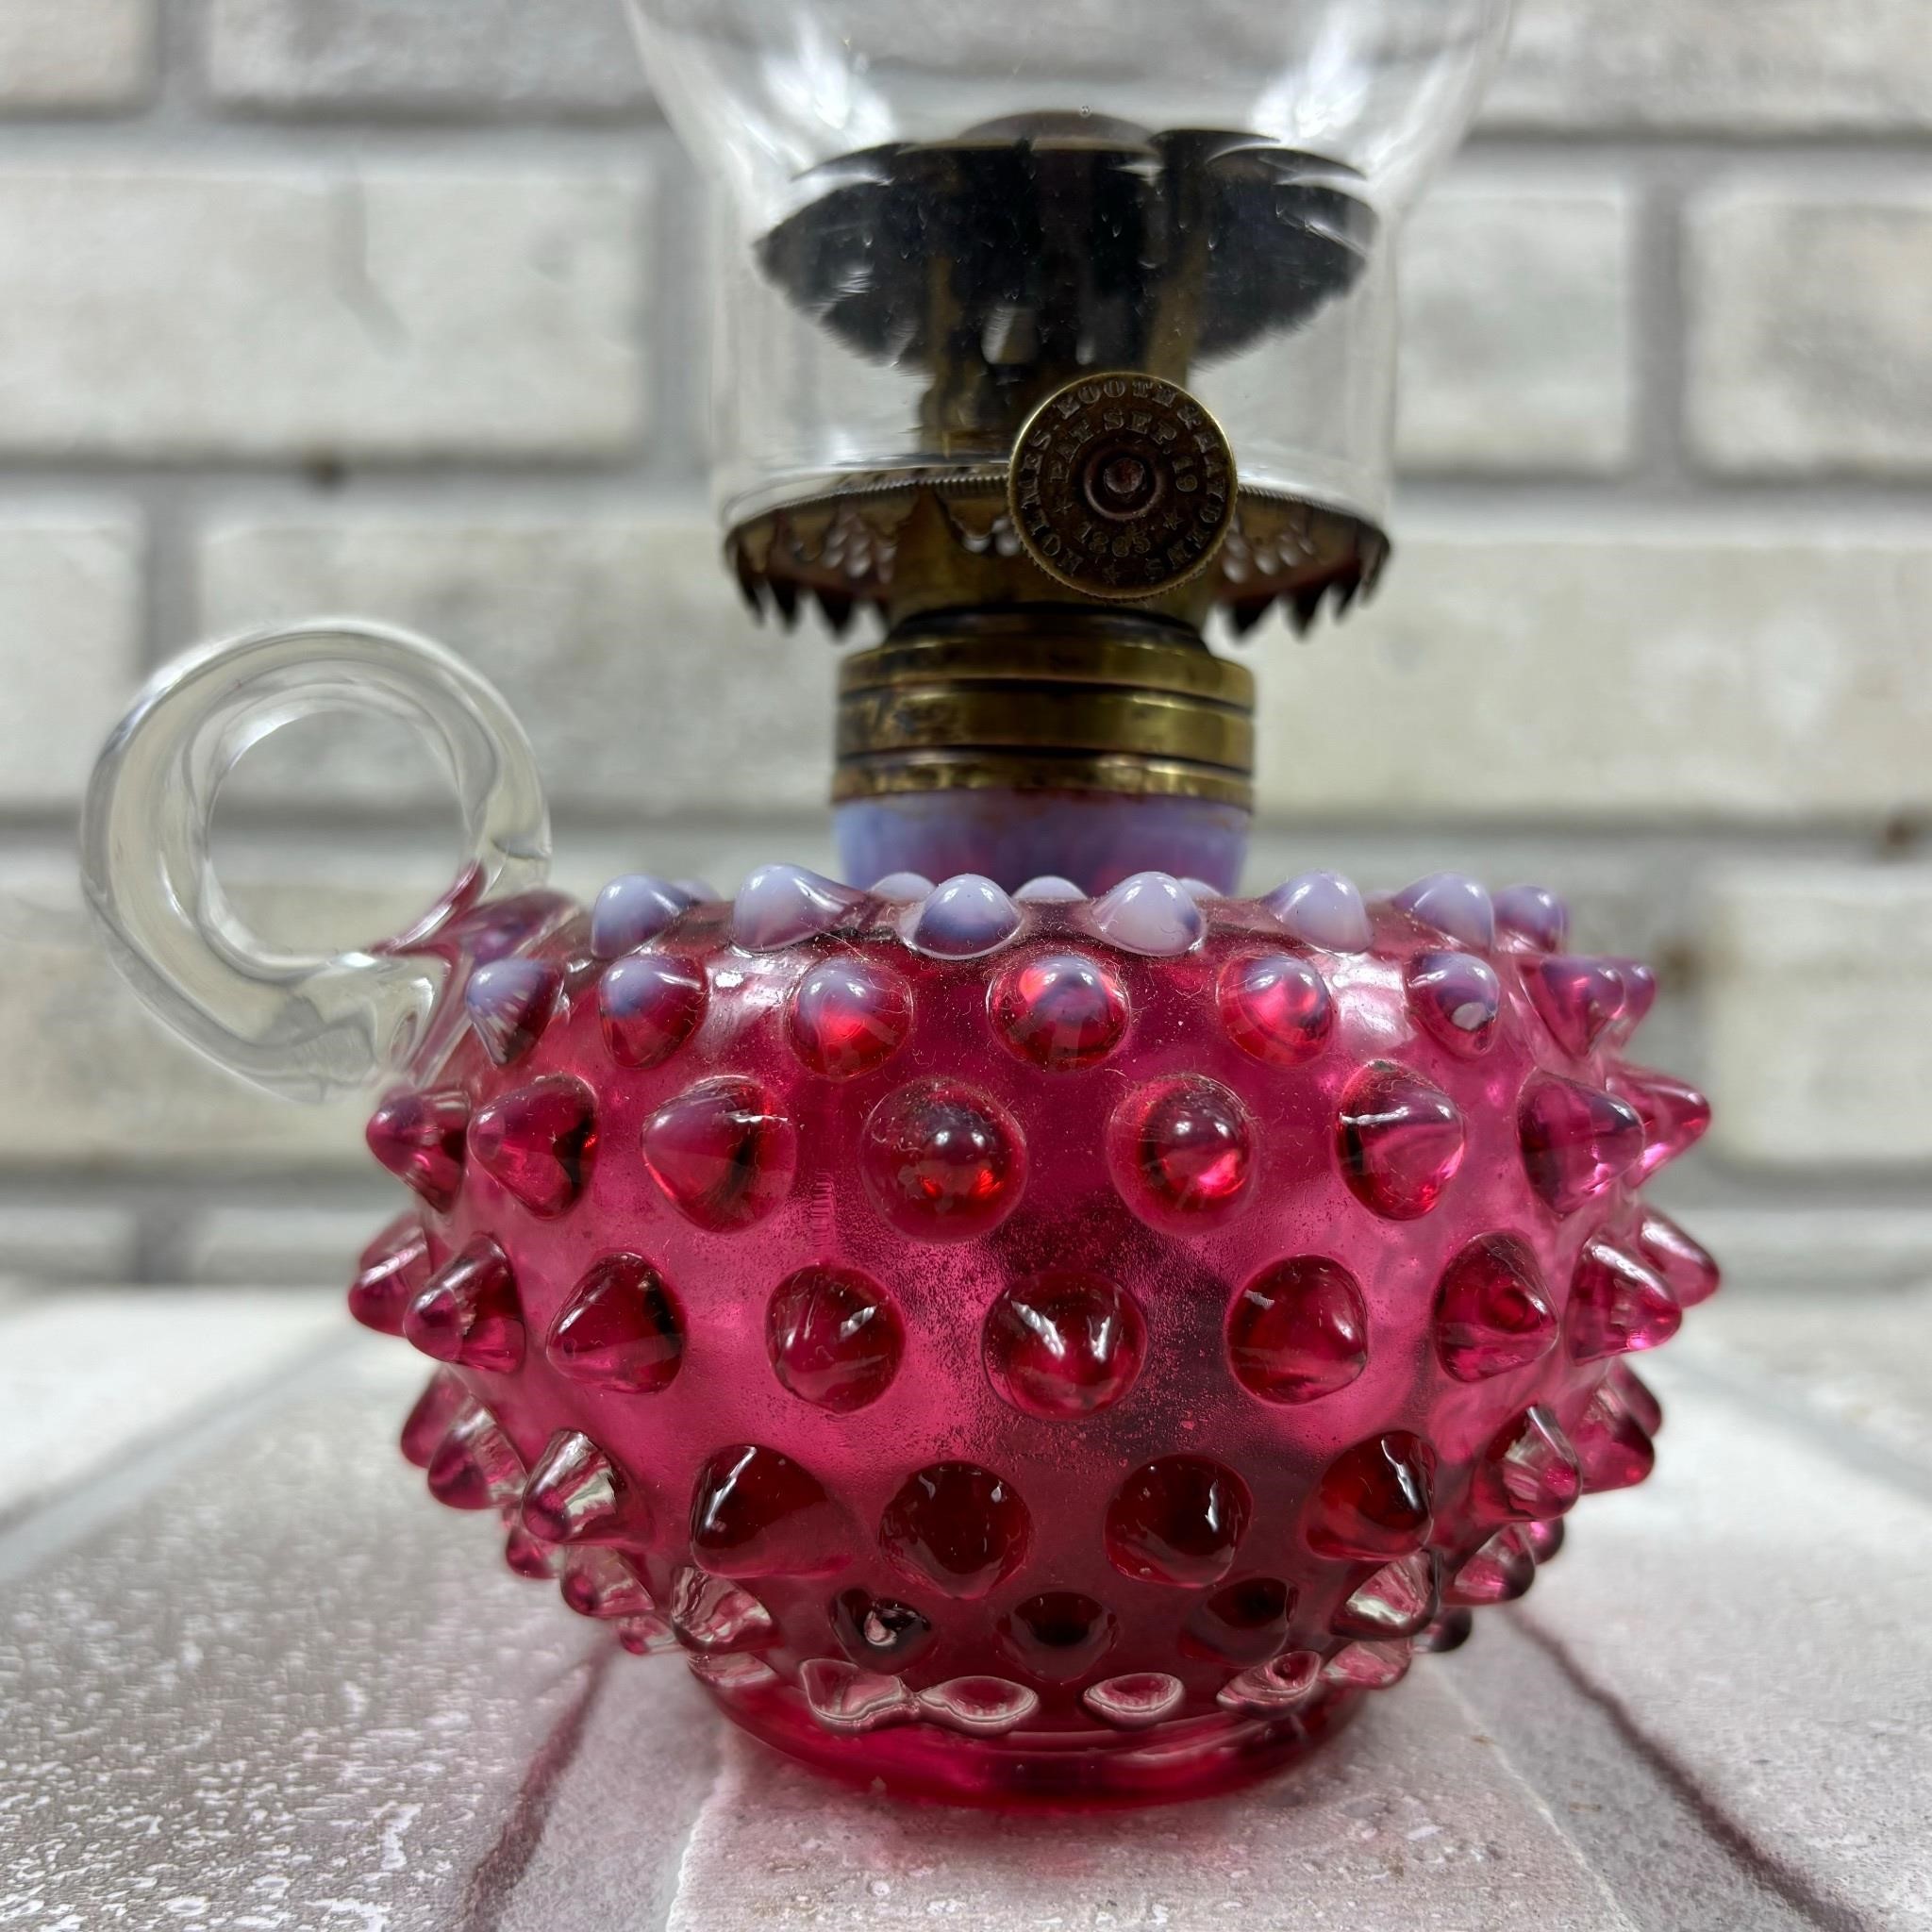 Cranberry Hobnail Finger Oil Lamp